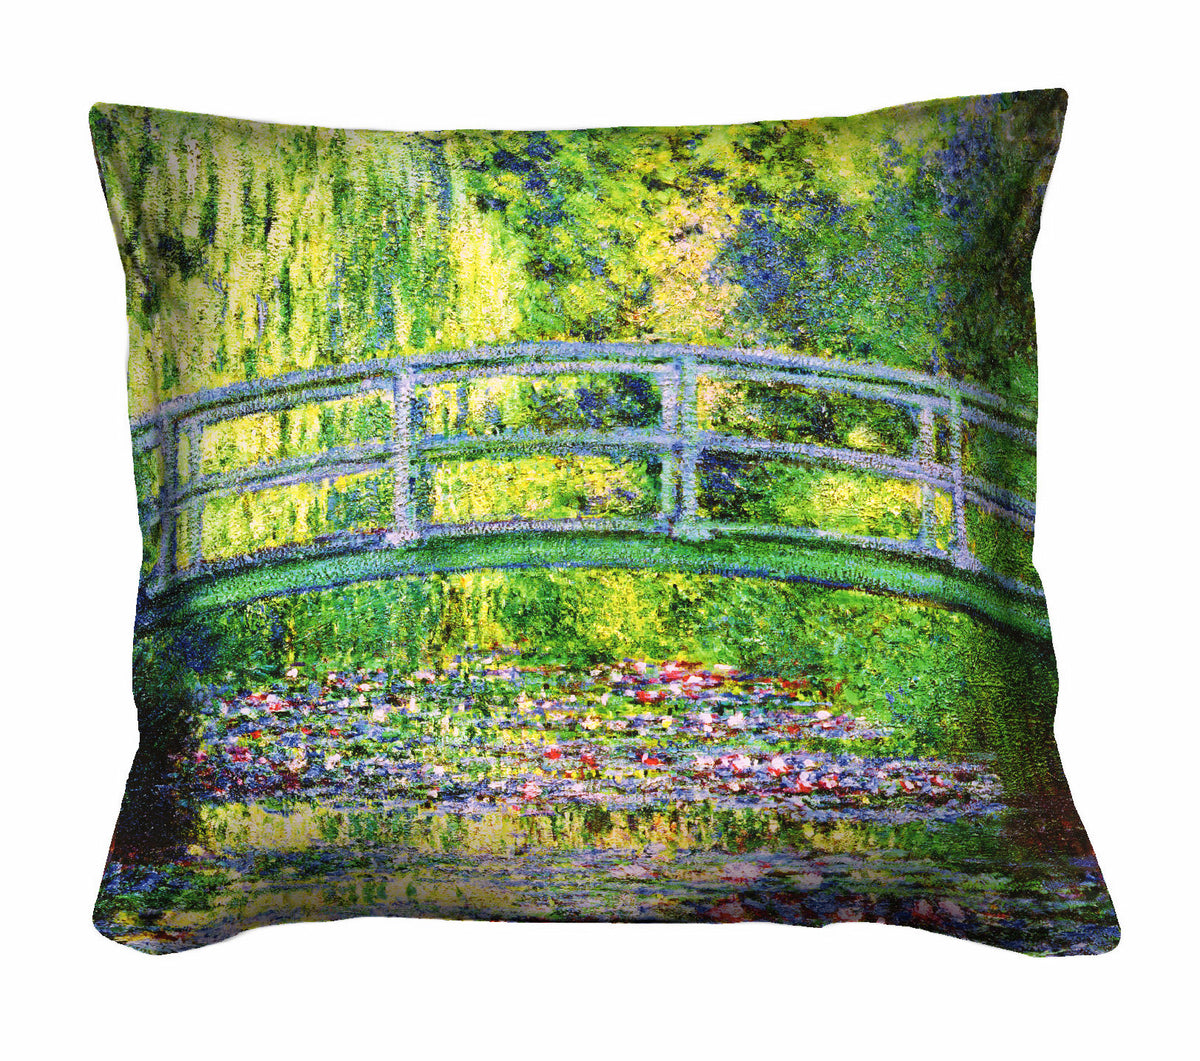 Decorative Cushion 40x40cm - Japanese Monet-Bridge